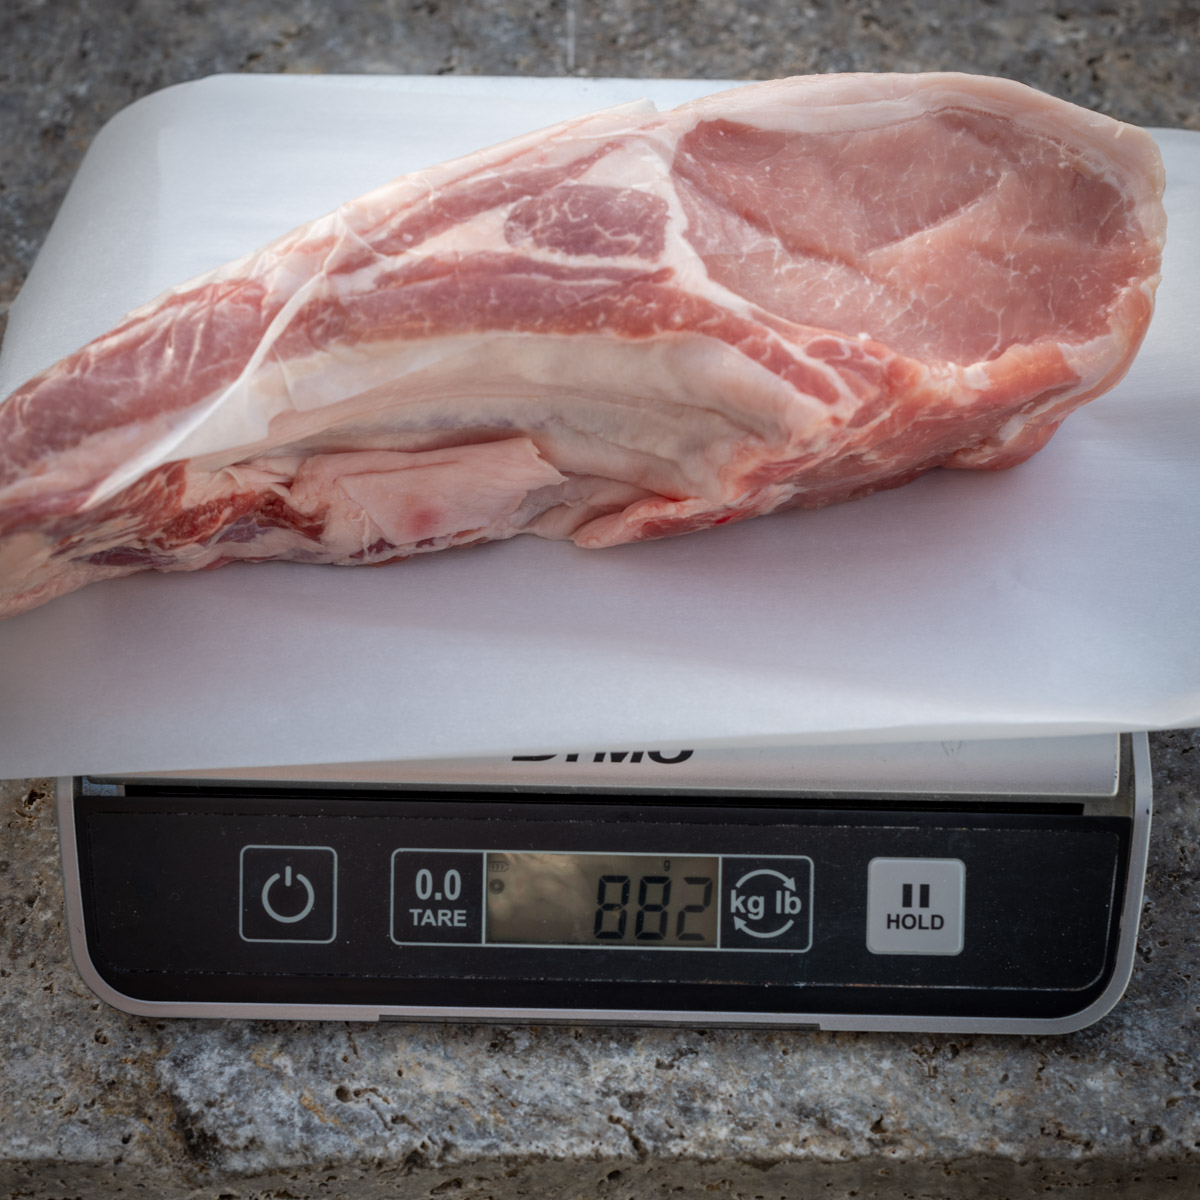 Pork chop weight before brining.